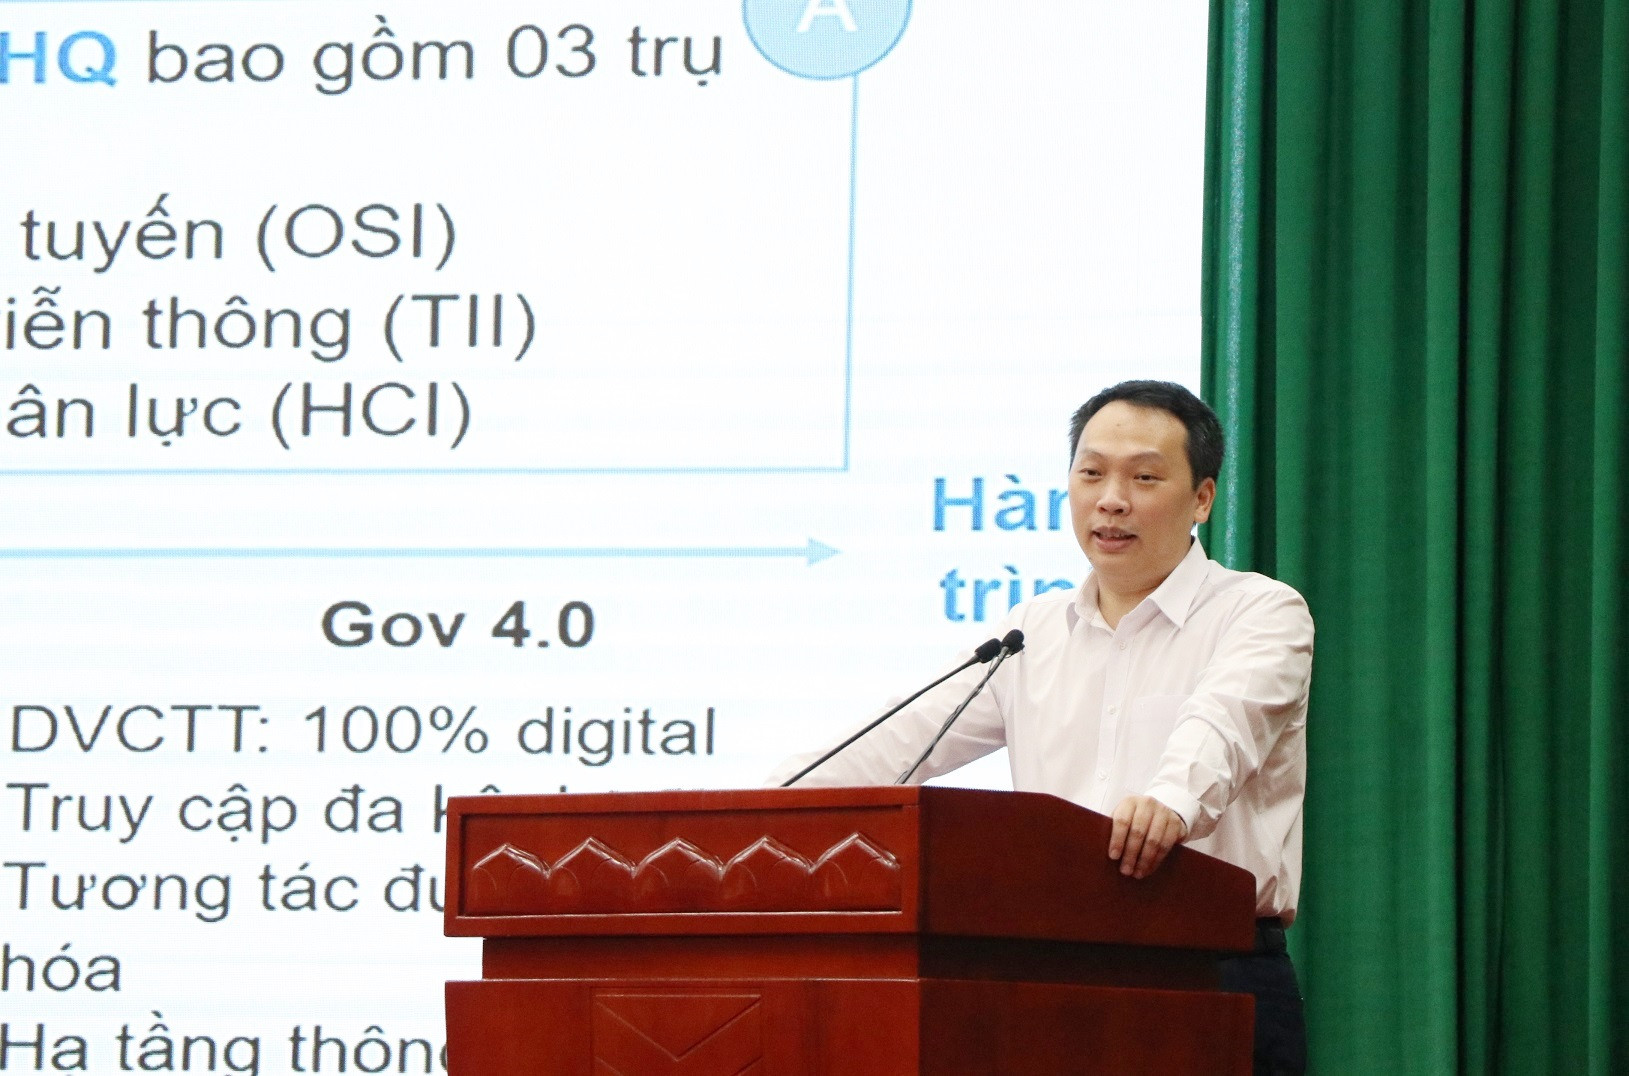 Chuyển đổi số giúp Thái Nguyên phát triển kinh tế vượt mức chỉ tiêu - Ảnh 2.